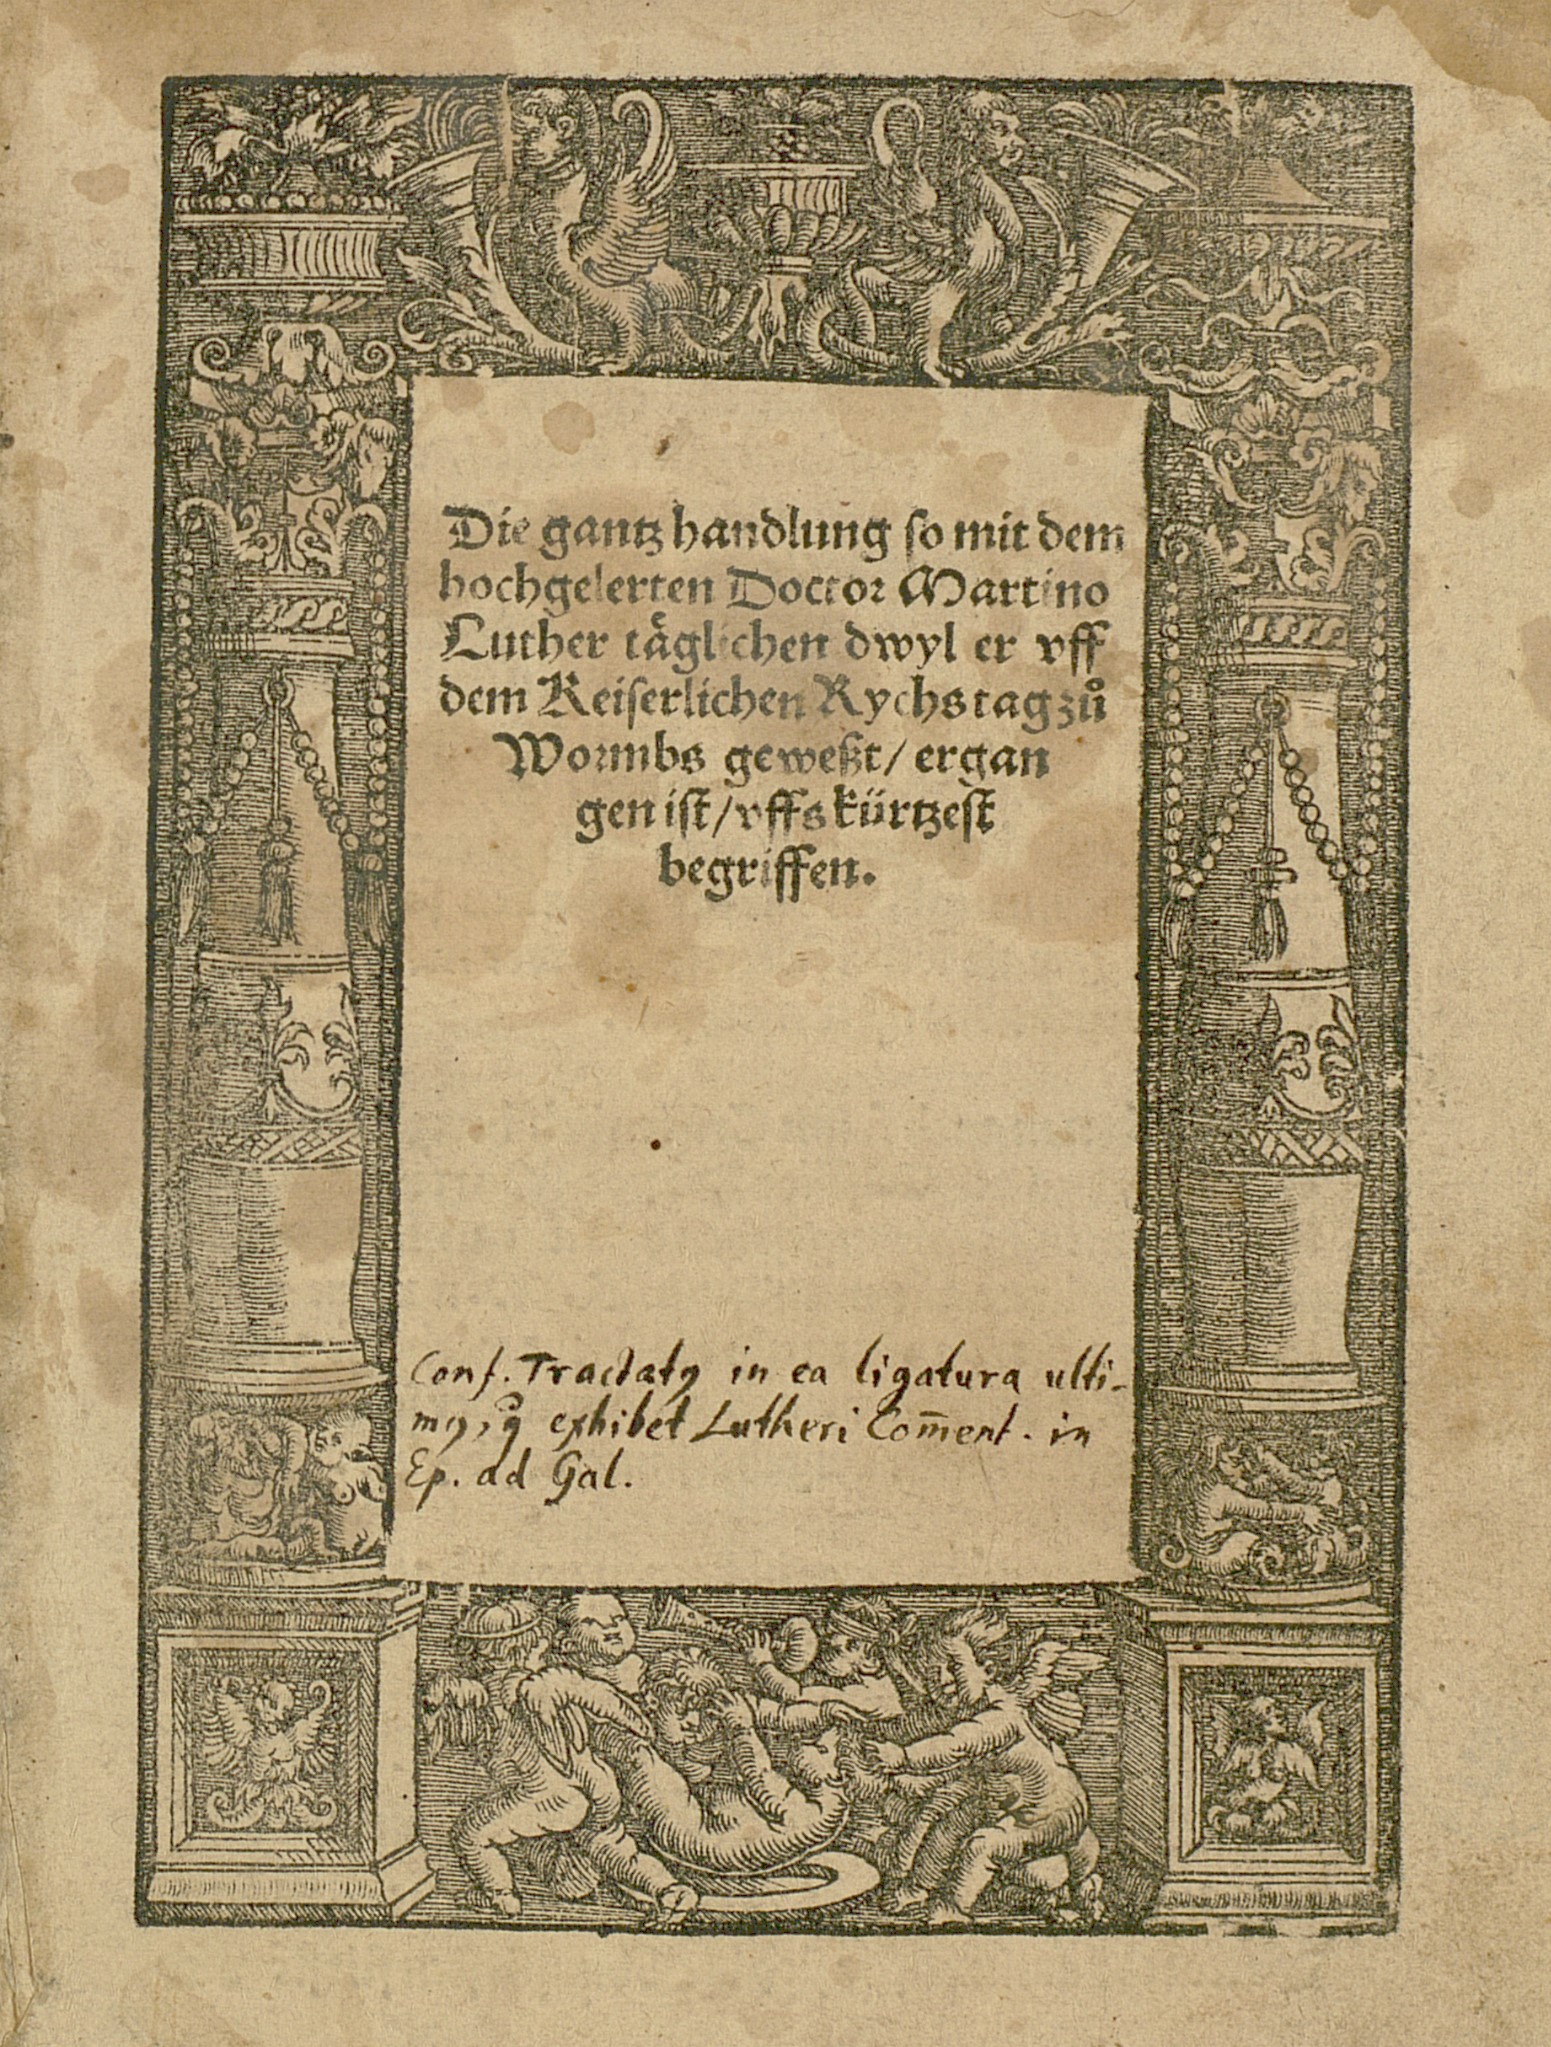 Georg Spalatin: Bericht über Luthers Auftritt auf dem Reichstag zu Worms 1521. Gedruckt in Hagenau von Thomas Anshelm 1521. - Signatur: 113 E 4485 R.